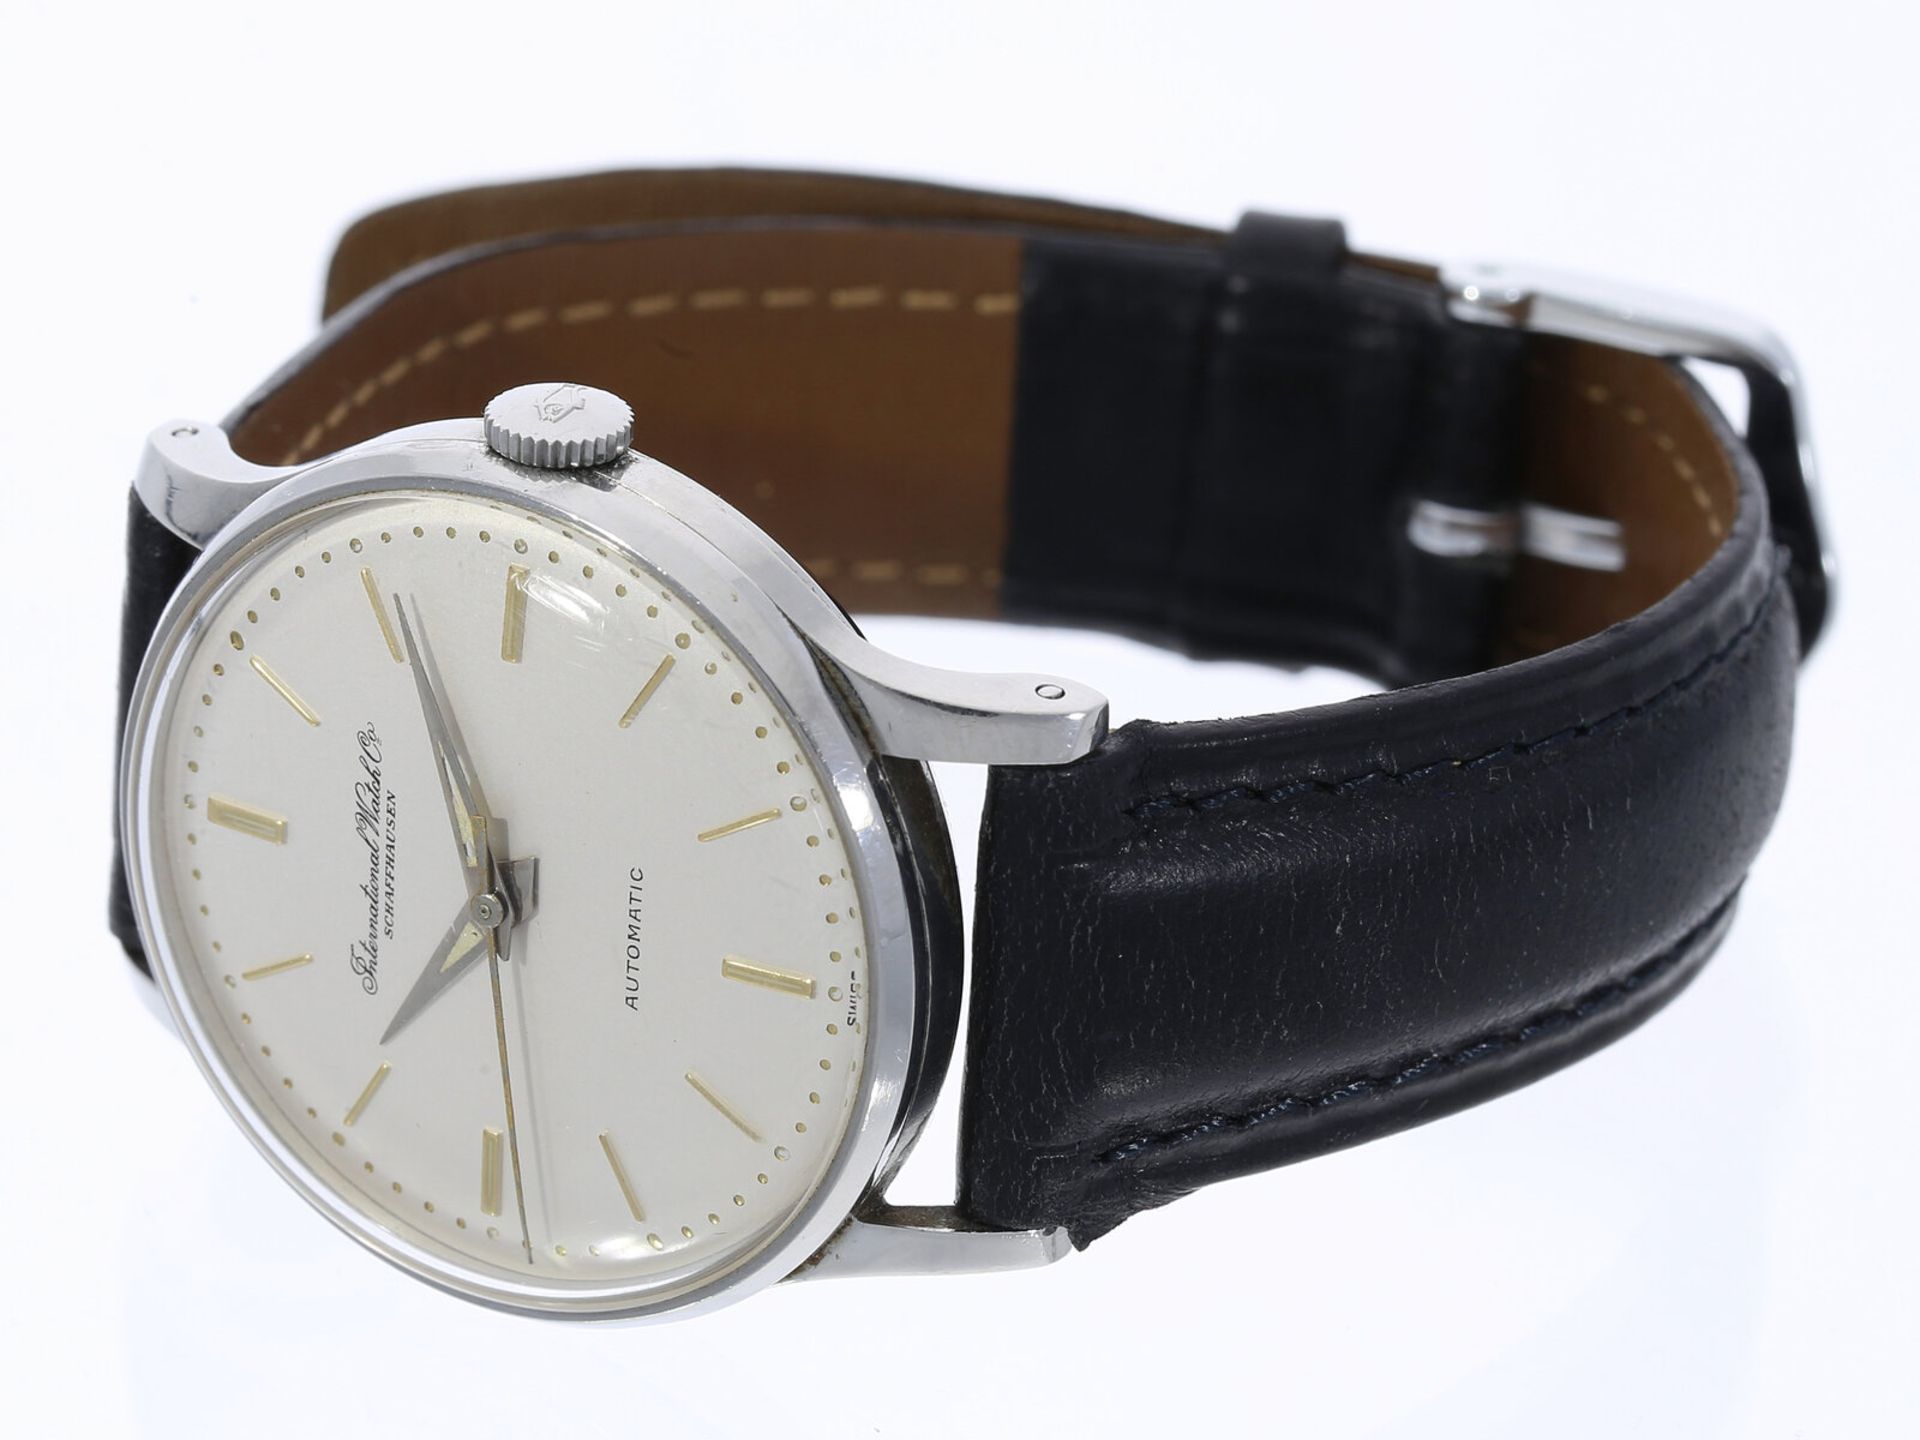 Armbanduhr: IWC Automatic in Edelstahl mit Zentralsekunde, Schaffhausen 1954 - Bild 2 aus 3